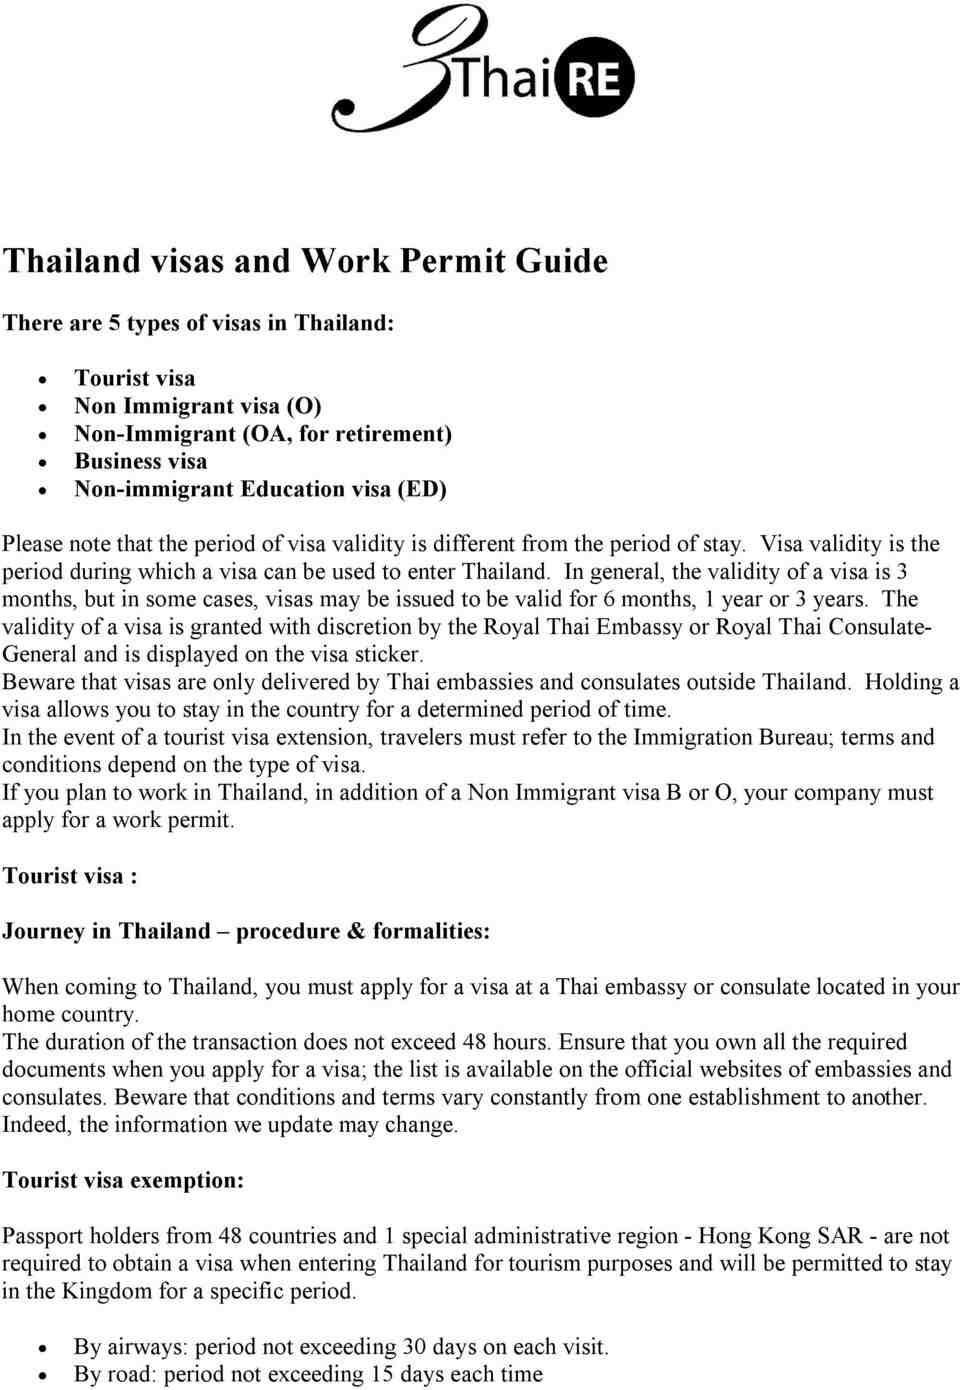 泰国 的生活贵吗？